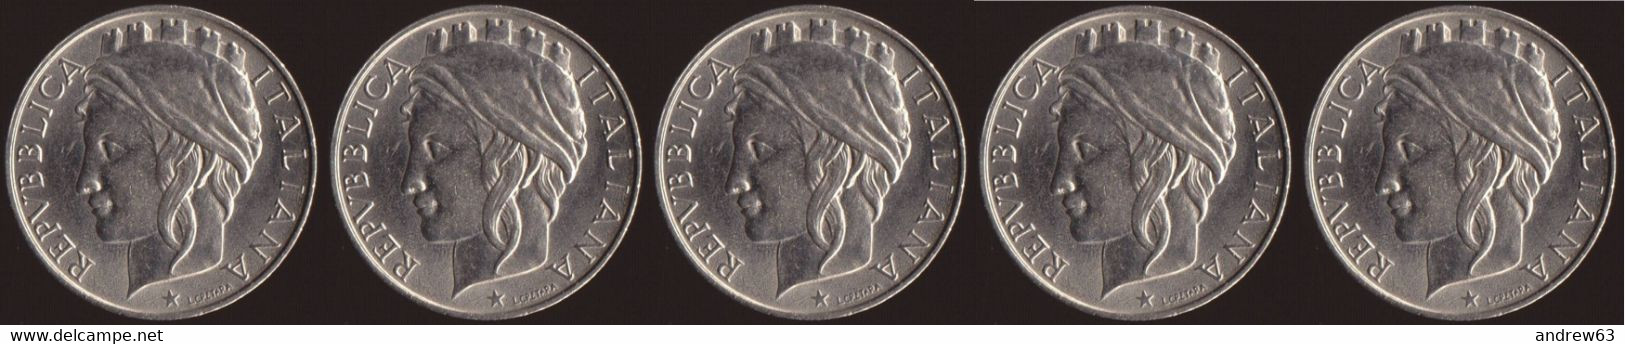 ITALIA - Lire 50 1997 - FDC/Unc Da Rotolino/from Roll 5 Monete/5 Coins - 50 Lire